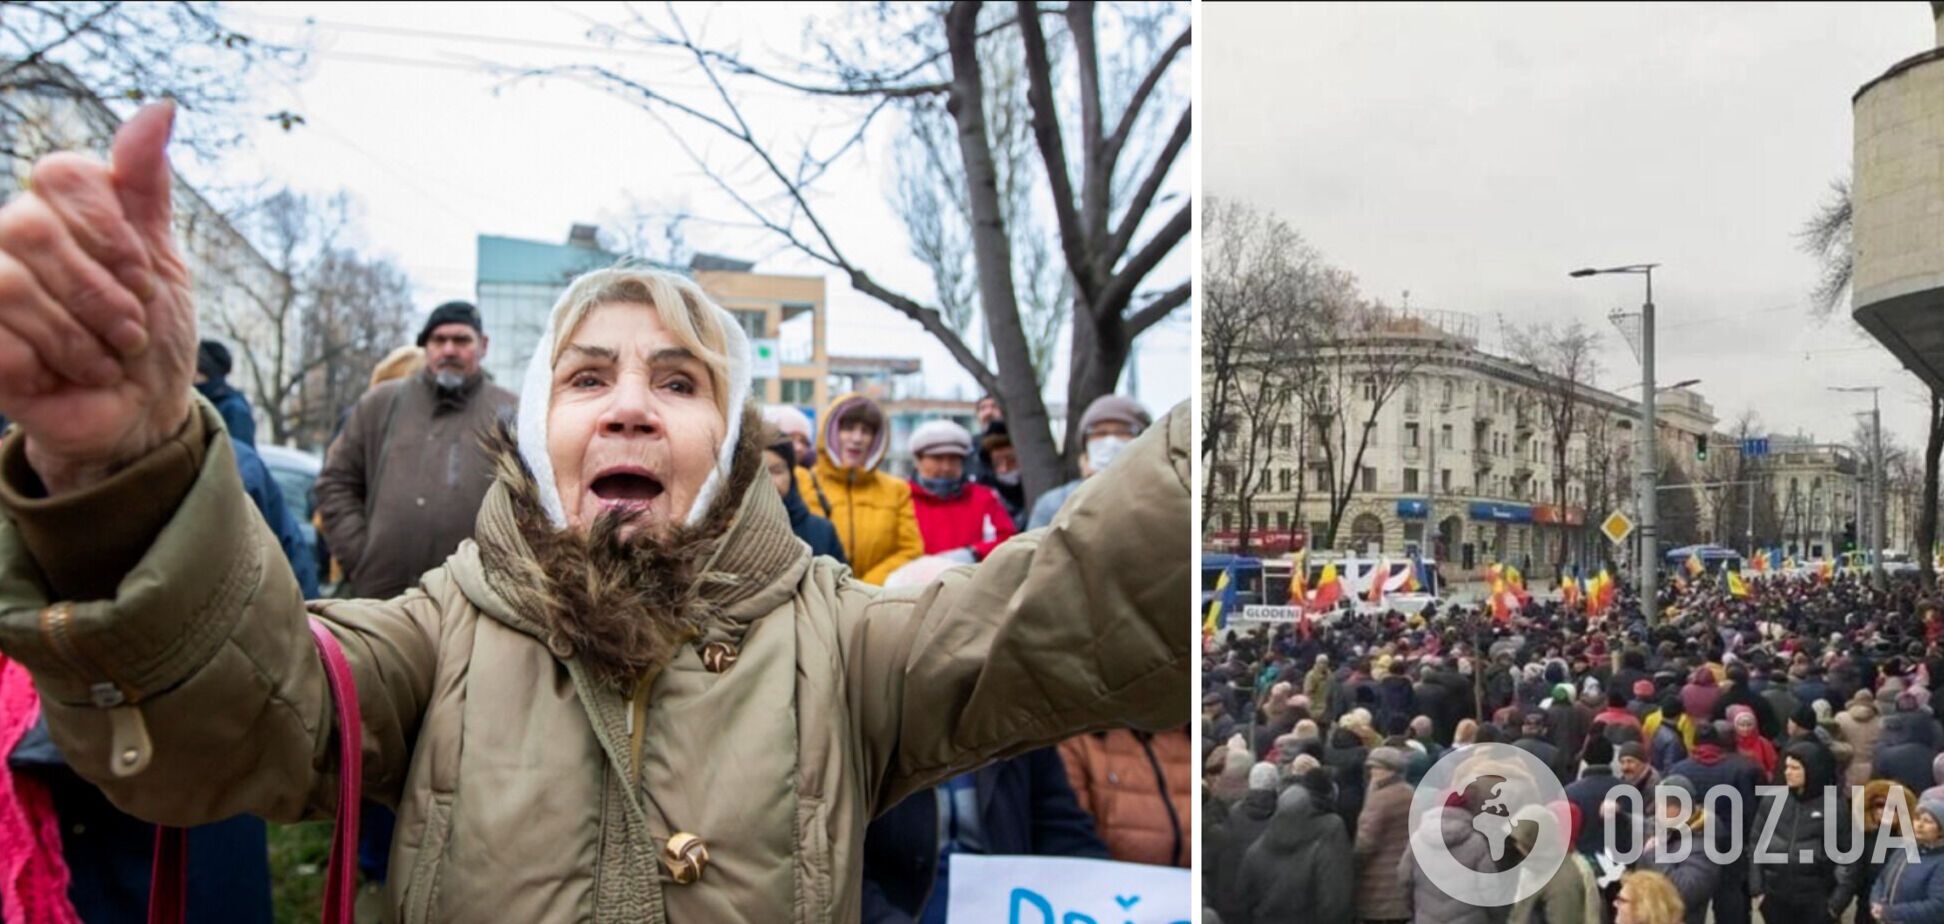 Блокировали дороги и кричали пророссийские лозунги: партия 'Шор' устроила акции протеста в столице Молдовы. Фото и видео